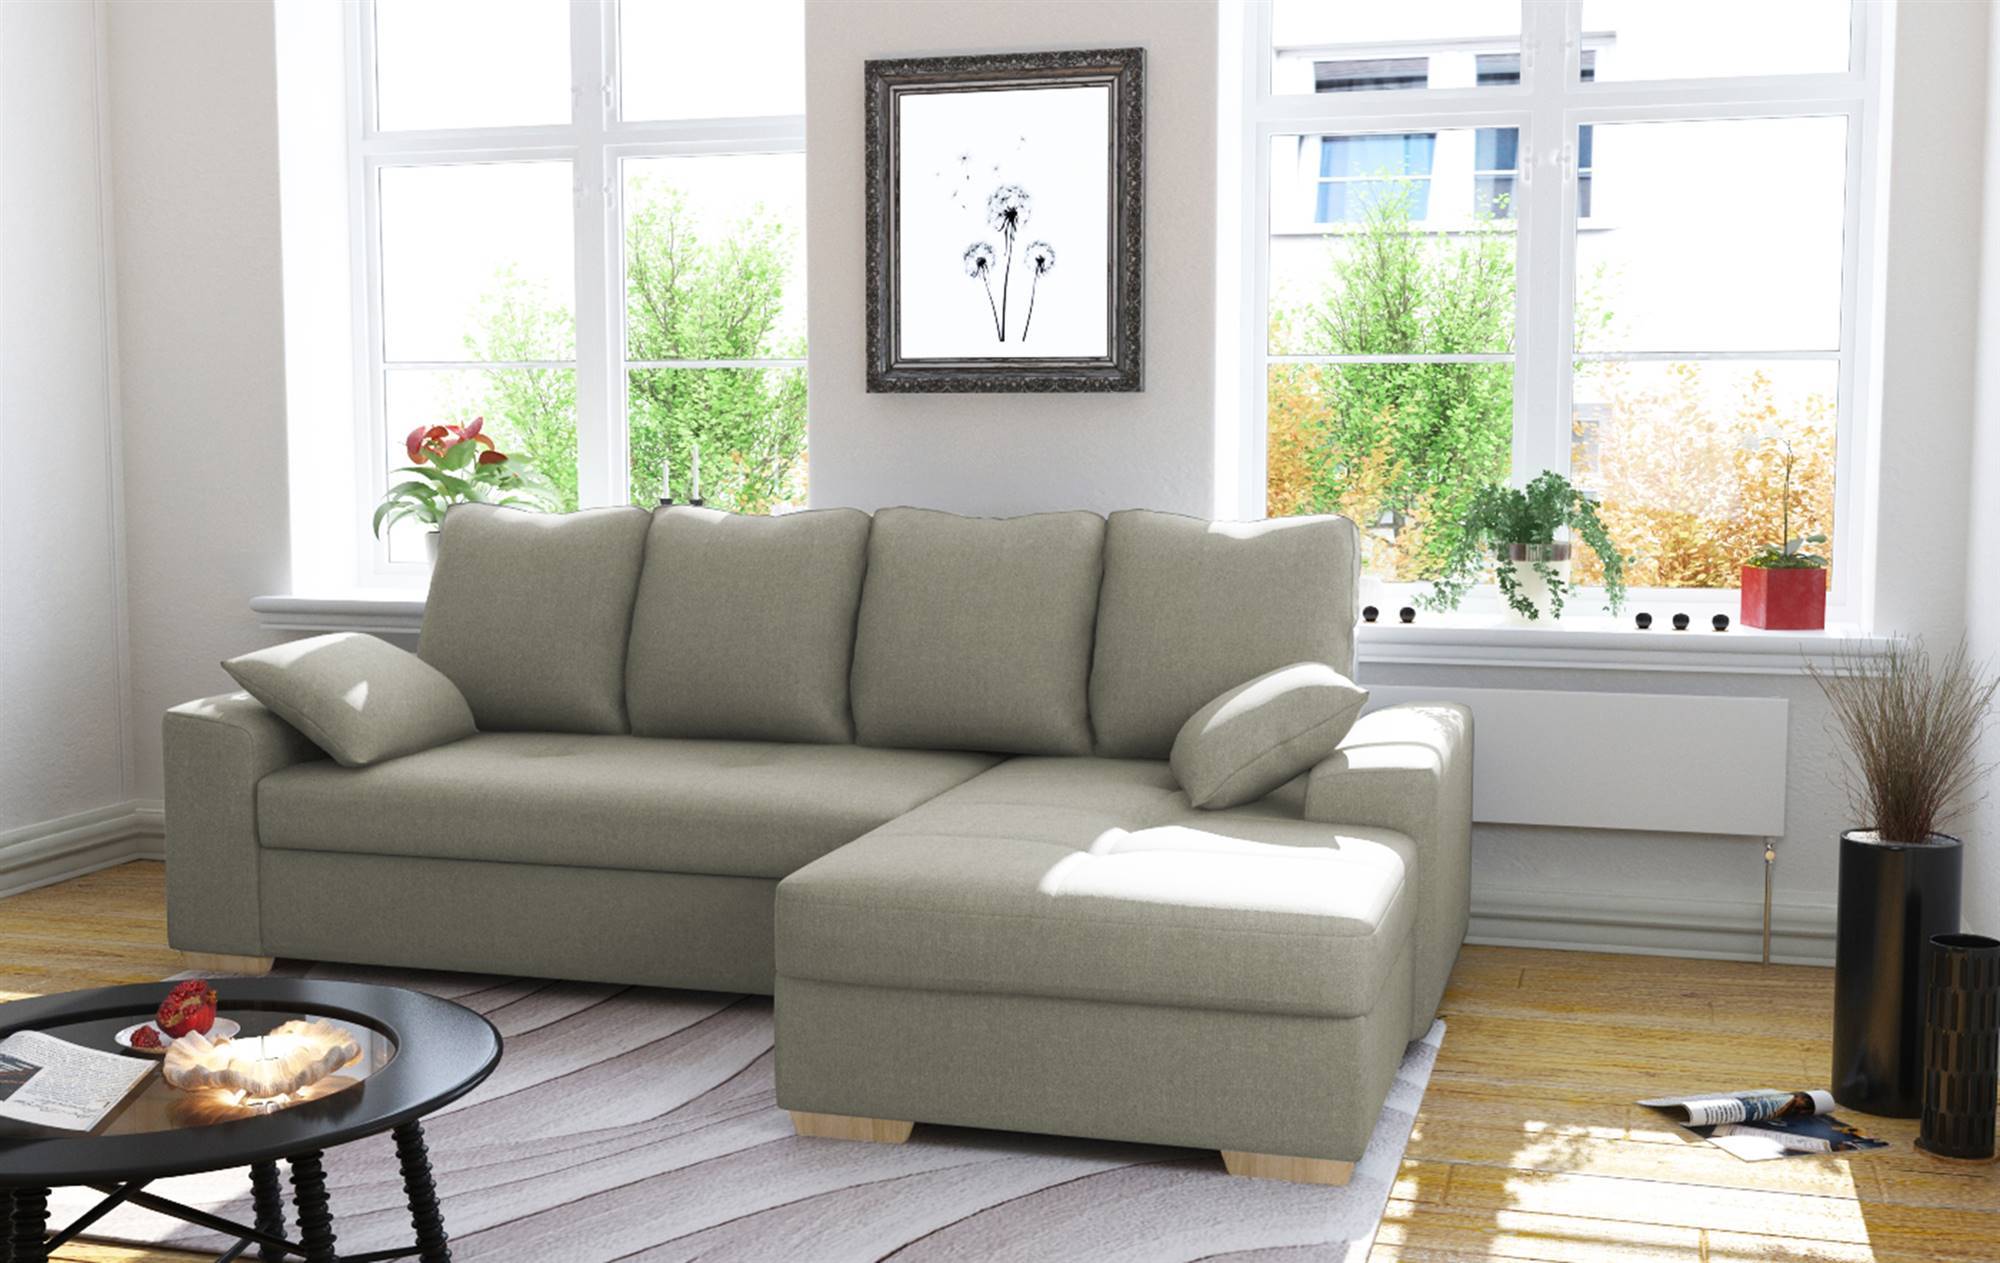 Paseo nombre Fantasía 10 sofás cama de Conforama: estilo y comodidad al mejor precio